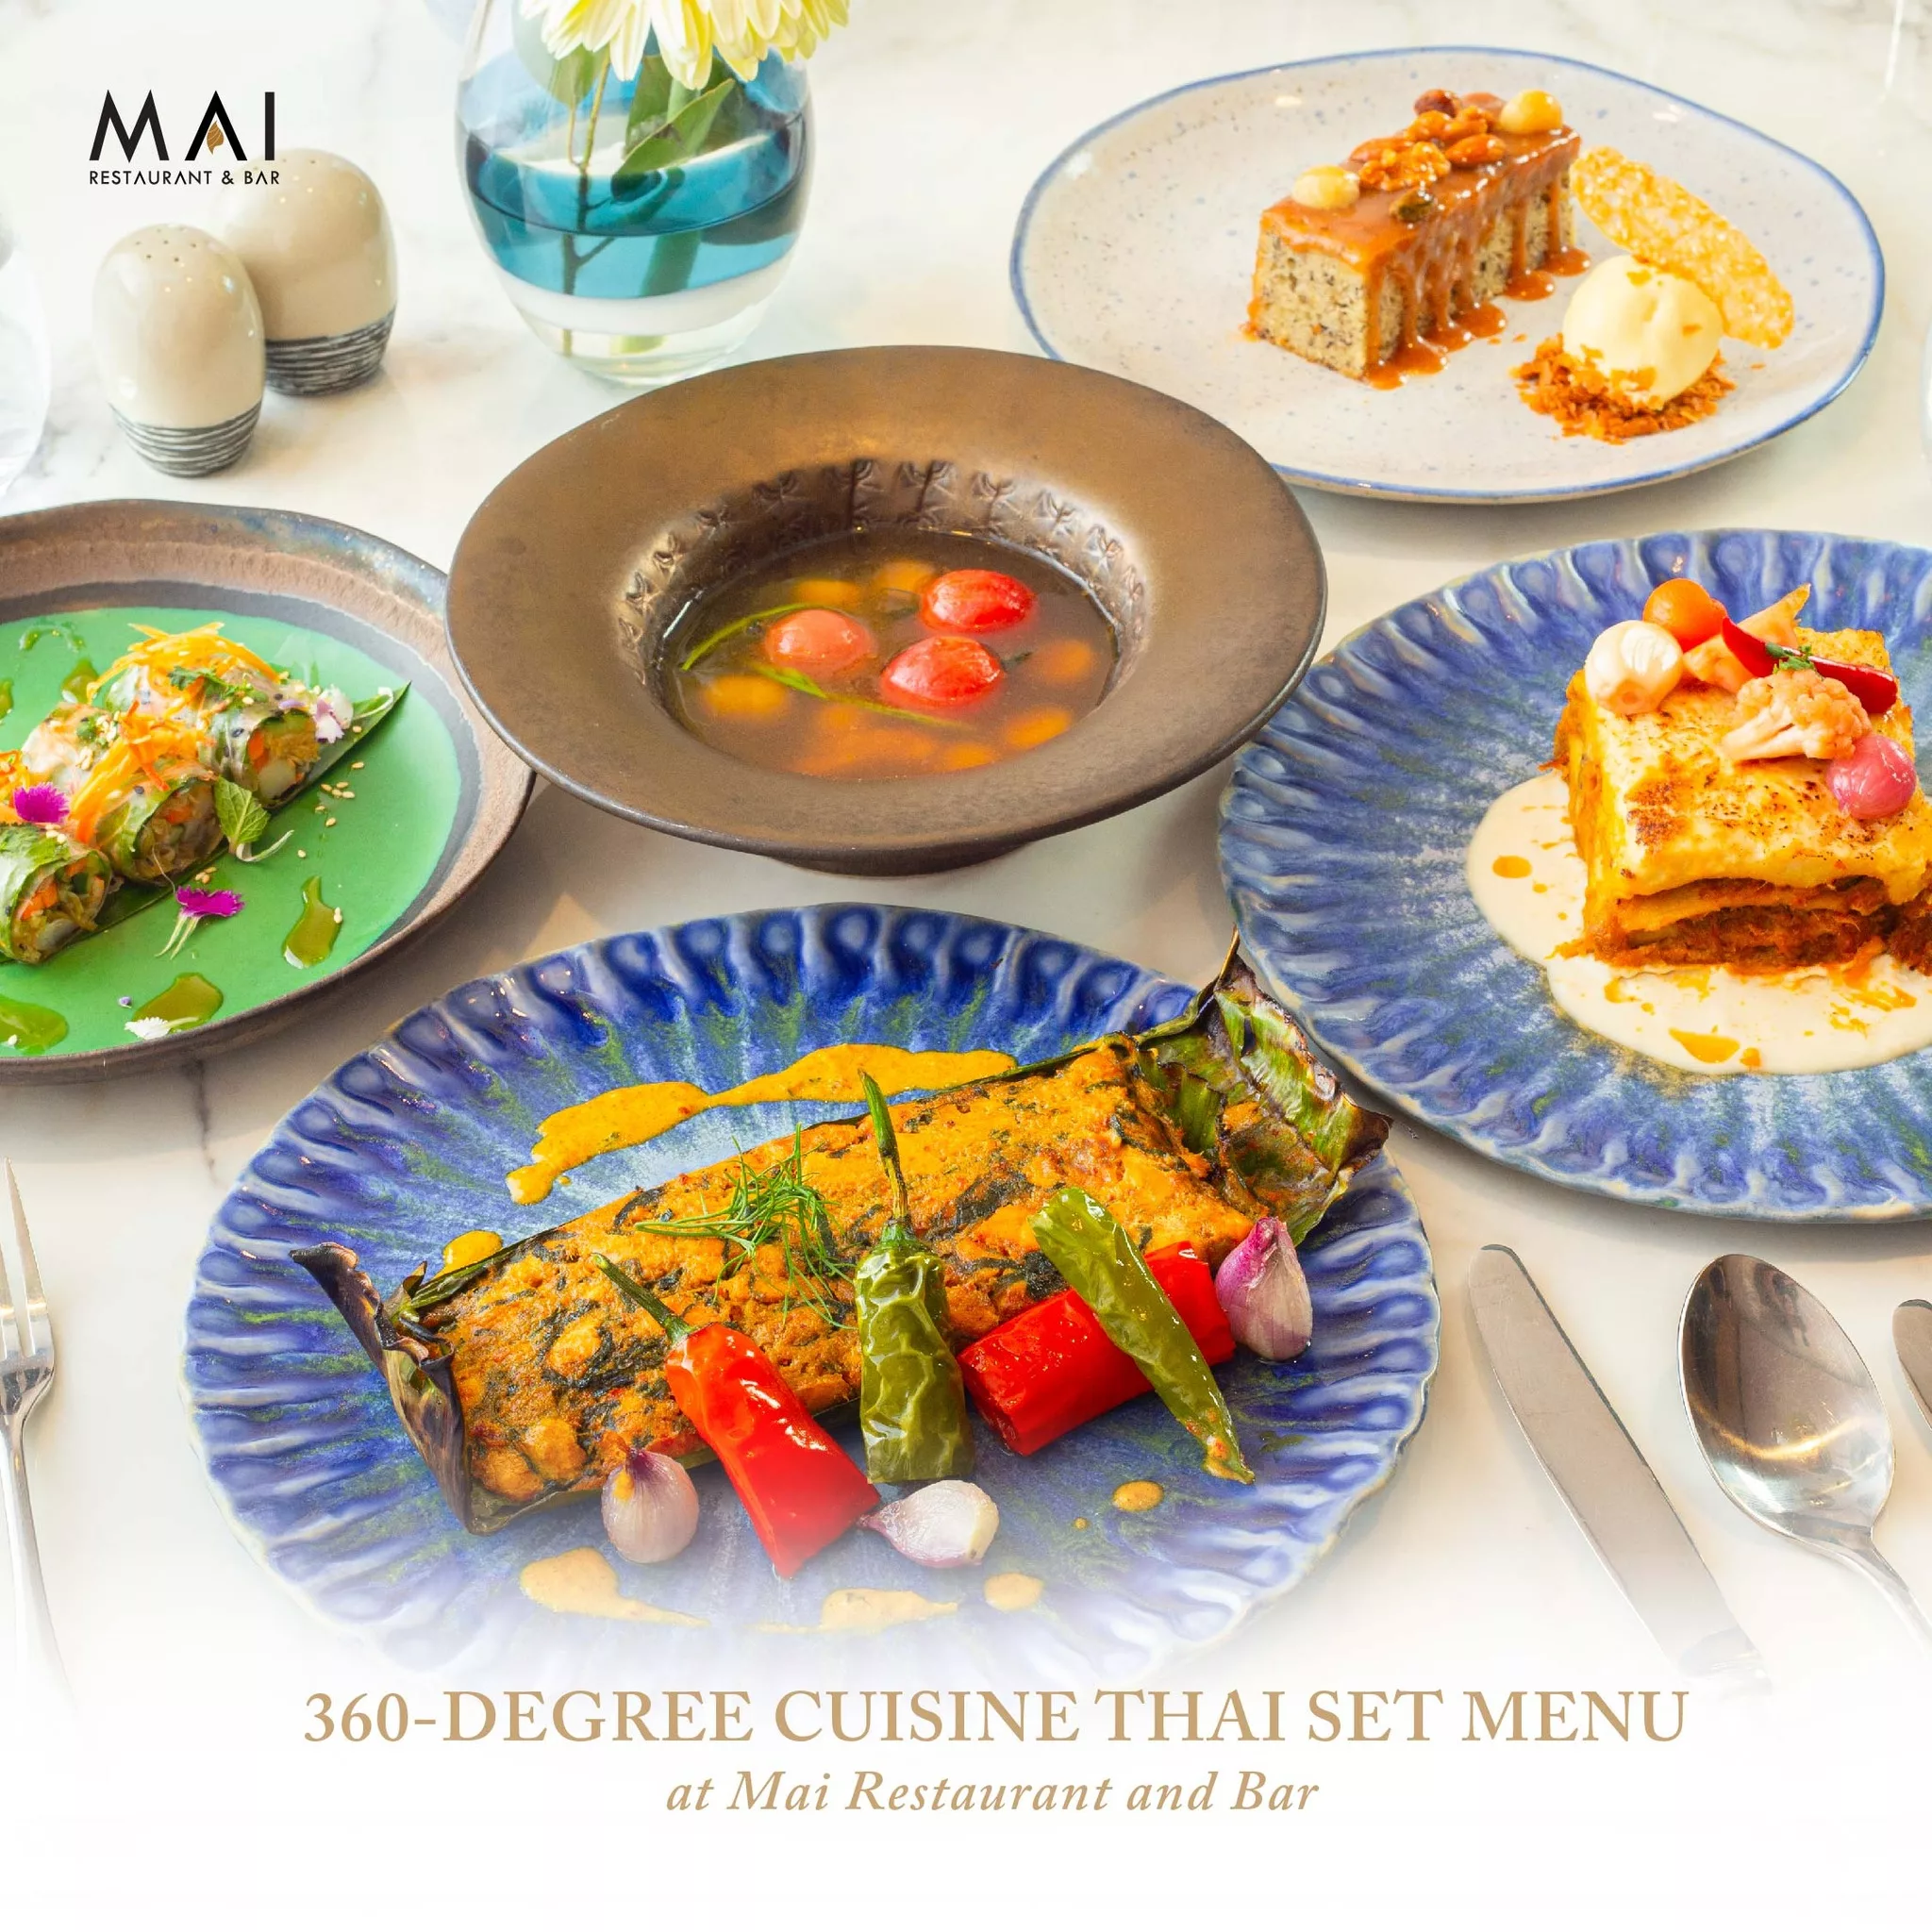 ยกระดับประสบการณ์ของการทานอาหารผ่าน The 360-degree cuisine Thai set menu